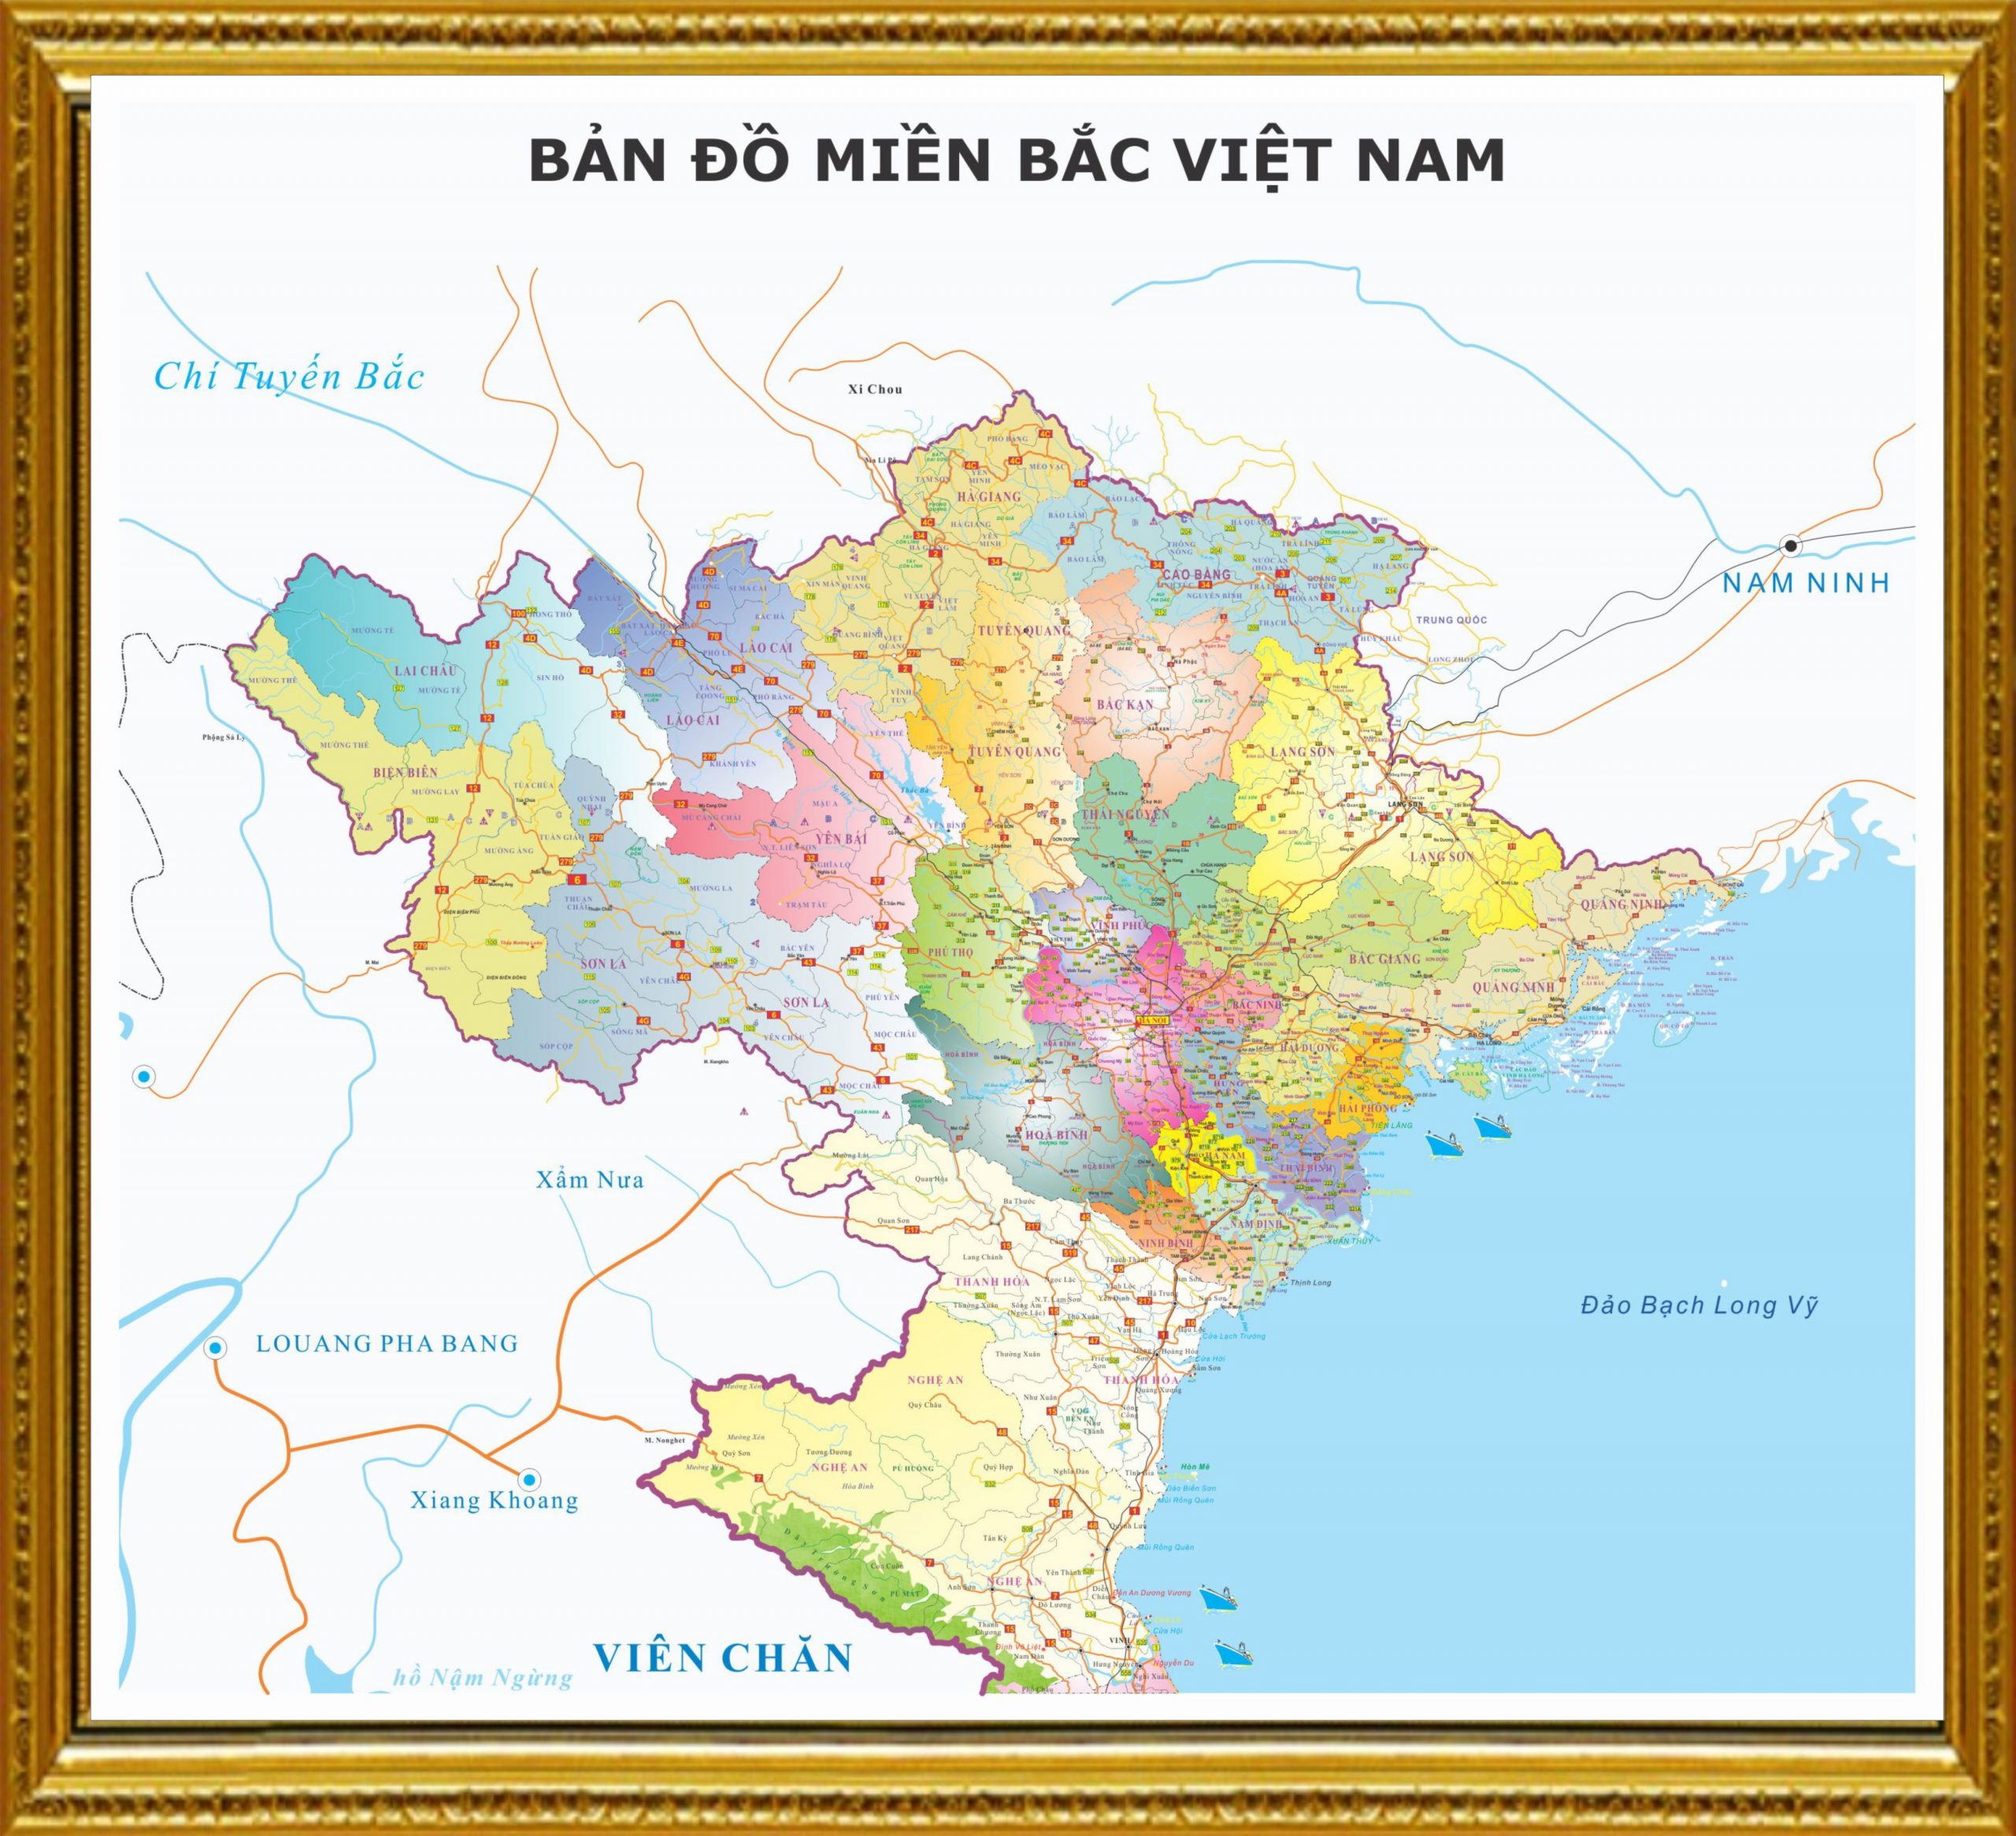 Bản đồ dùng miền Bắc Việt Nam